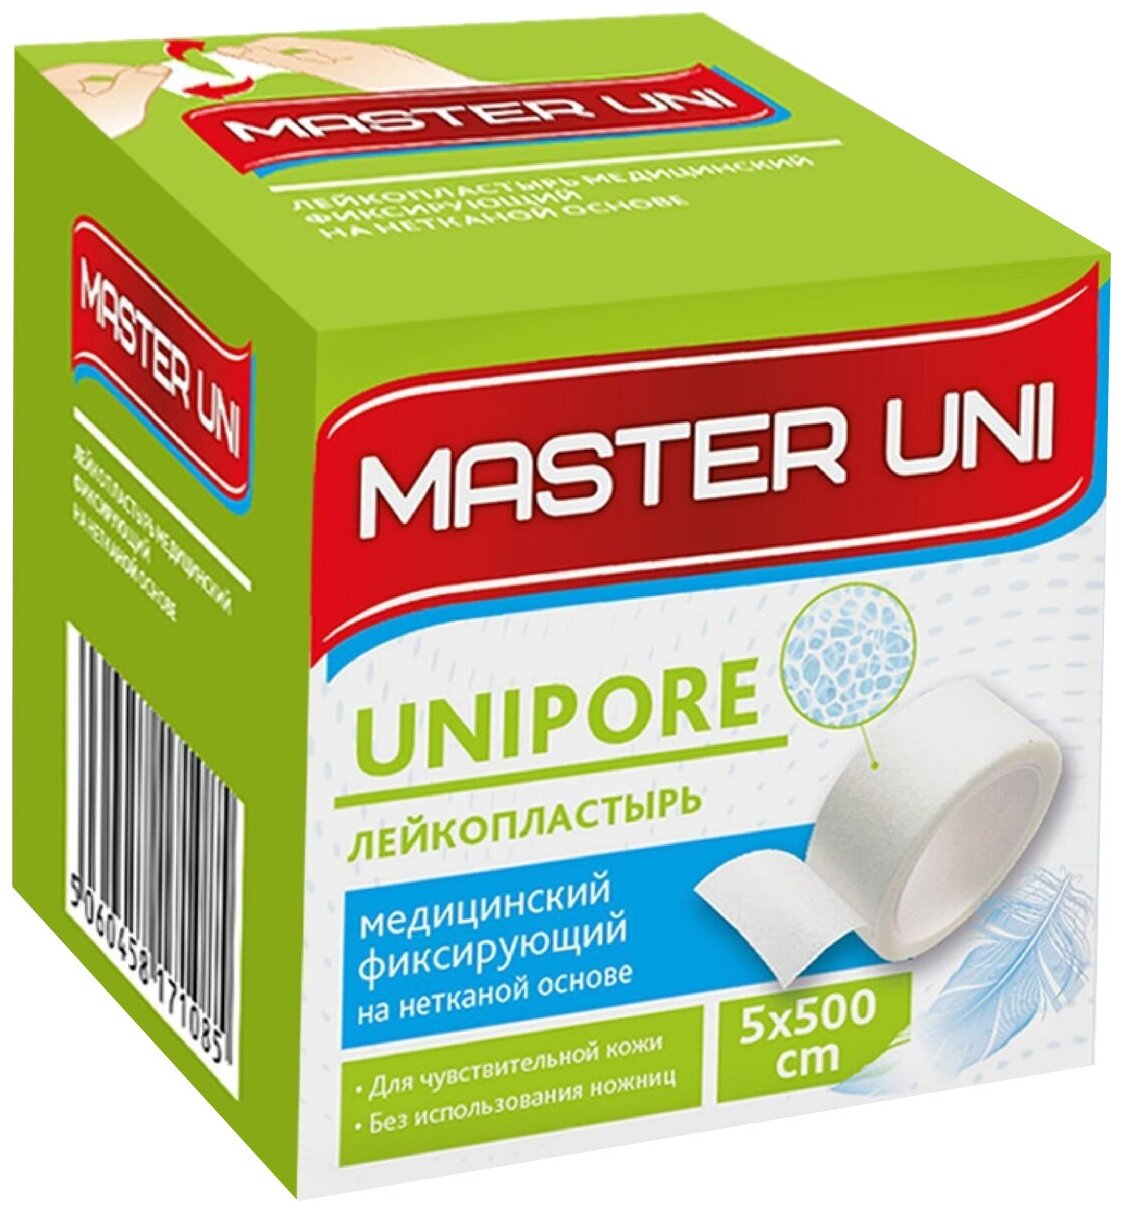 Master Uni UNIPORE лейкопластырь фиксирующий на нетканой основе 5х500 см 1 шт.